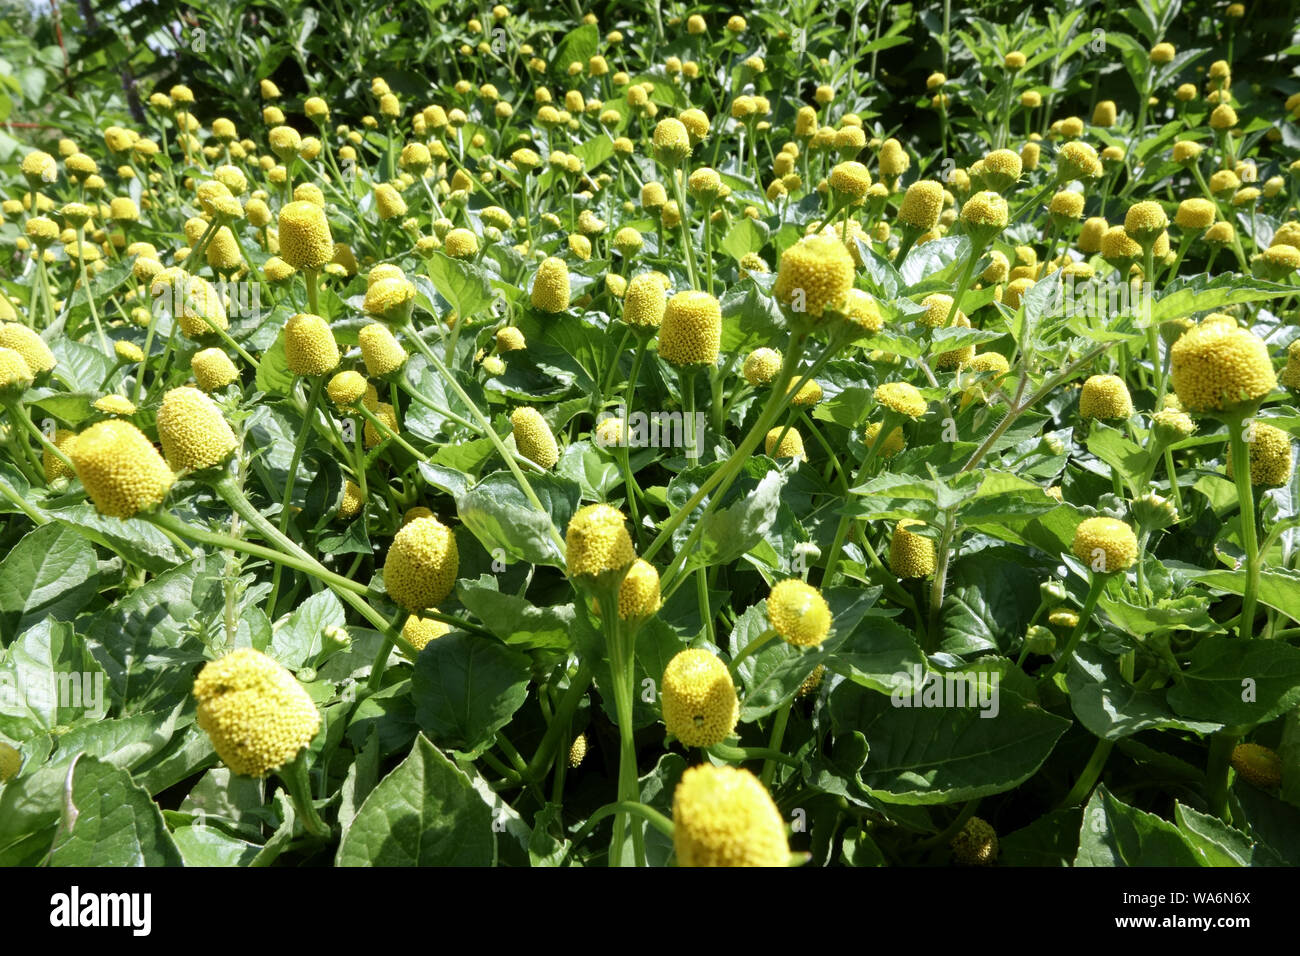 Toothache Plant Spilanthes Acmella oleracea 'Lemon Drops' garden herb Medicinal plant Stock Photo